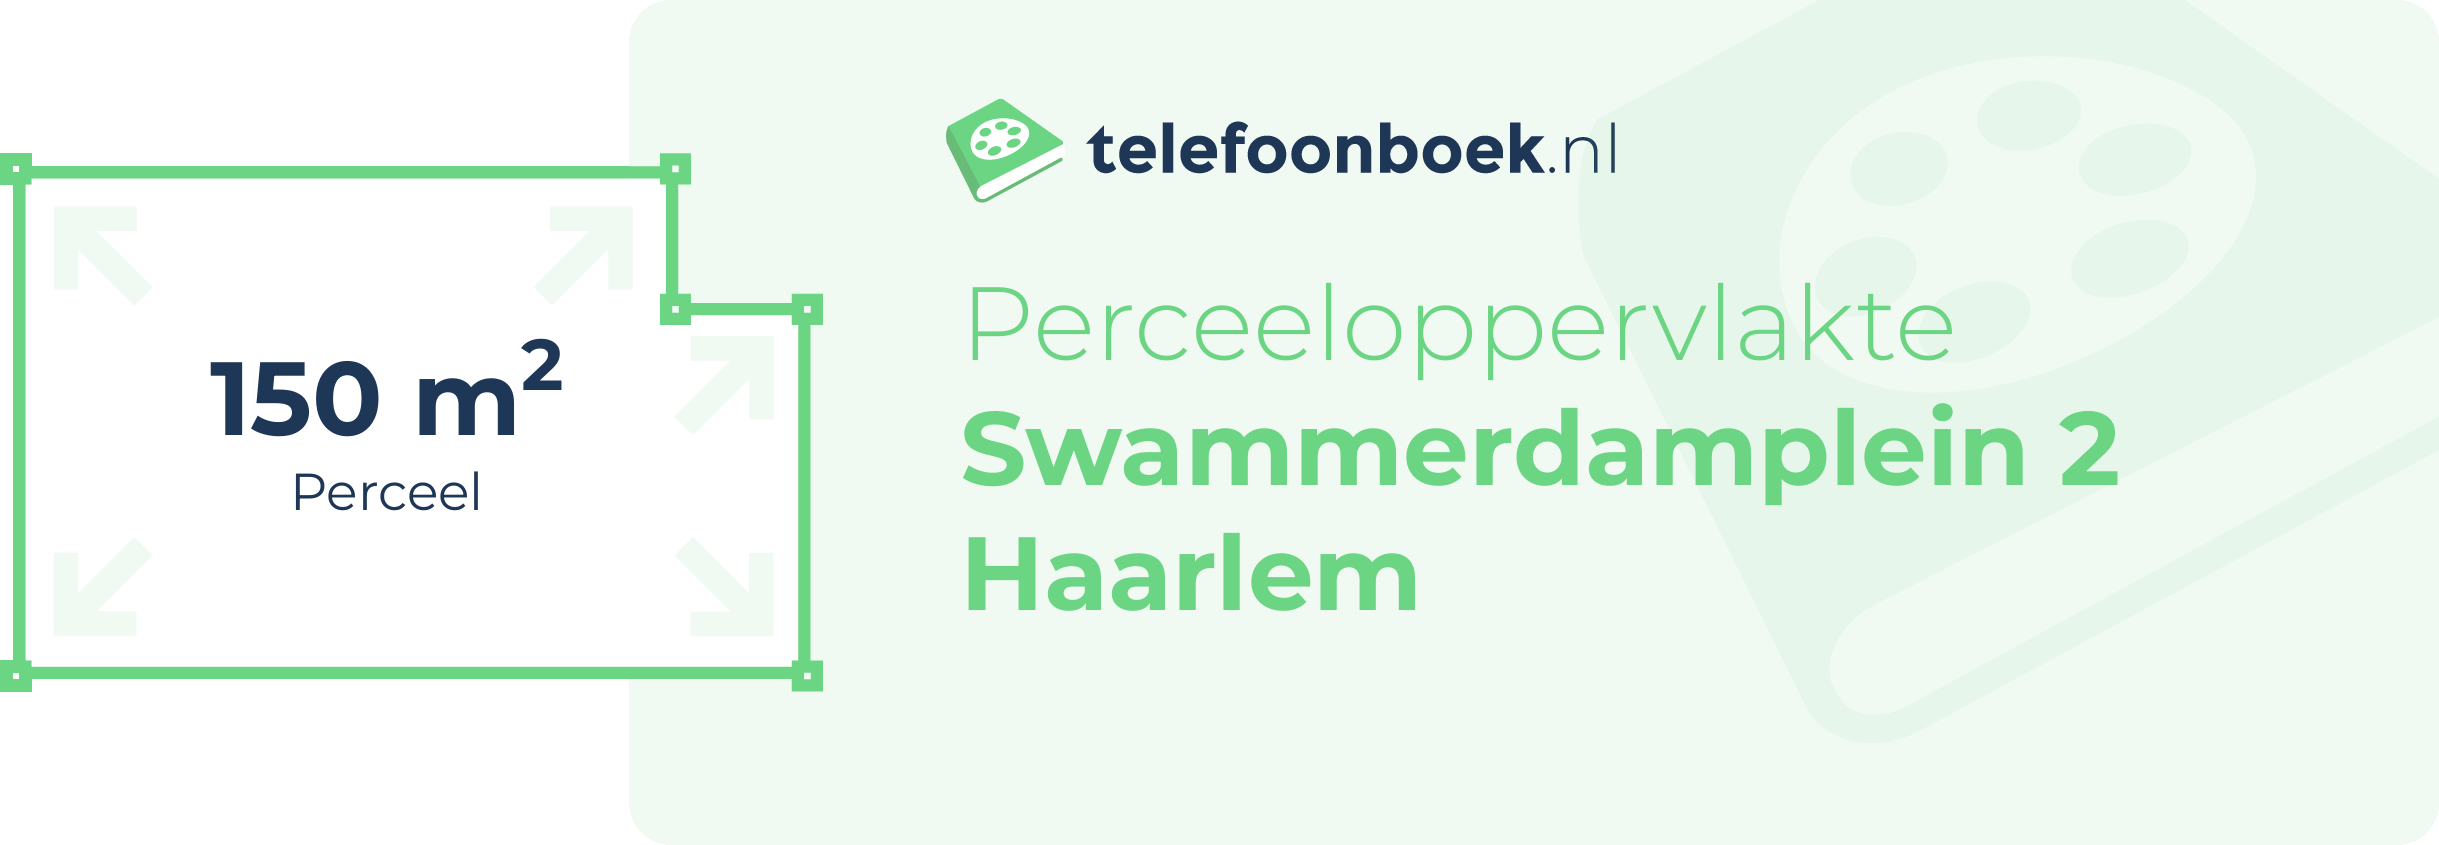 Perceeloppervlakte Swammerdamplein 2 Haarlem